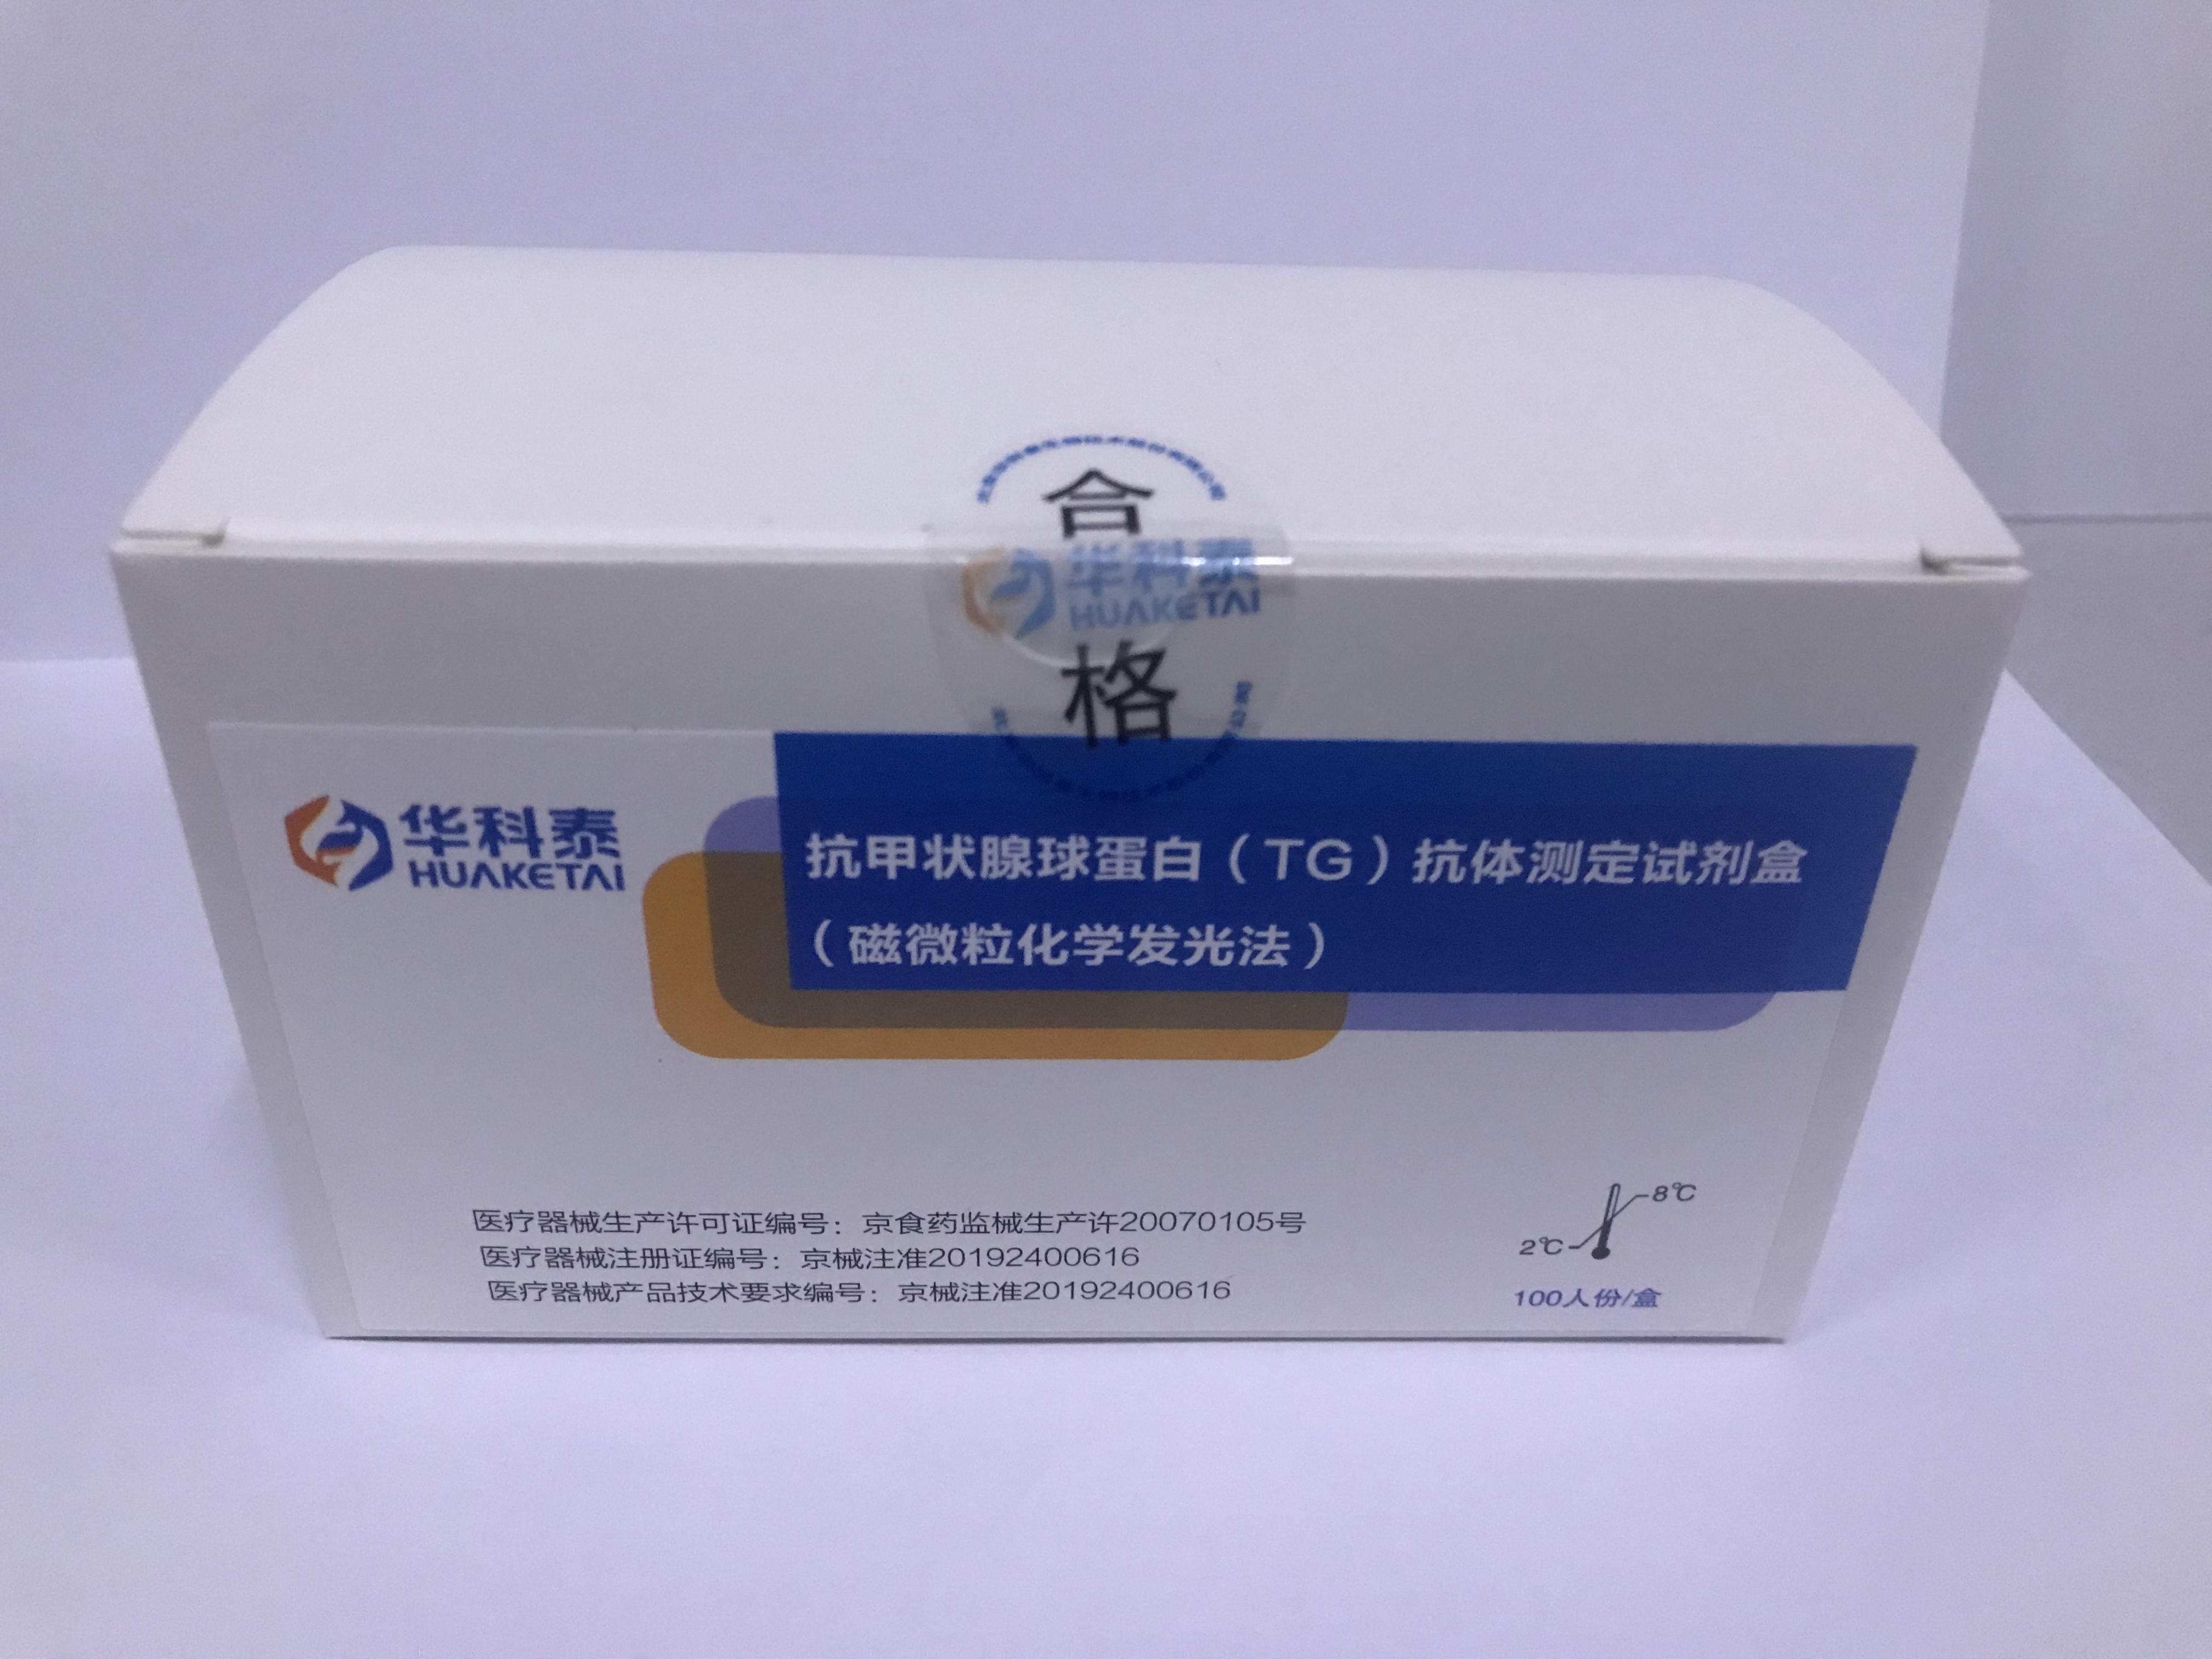 【华科泰】抗甲状腺球蛋白（TG）抗体测定试剂盒（磁微粒化学发光法）-云医购